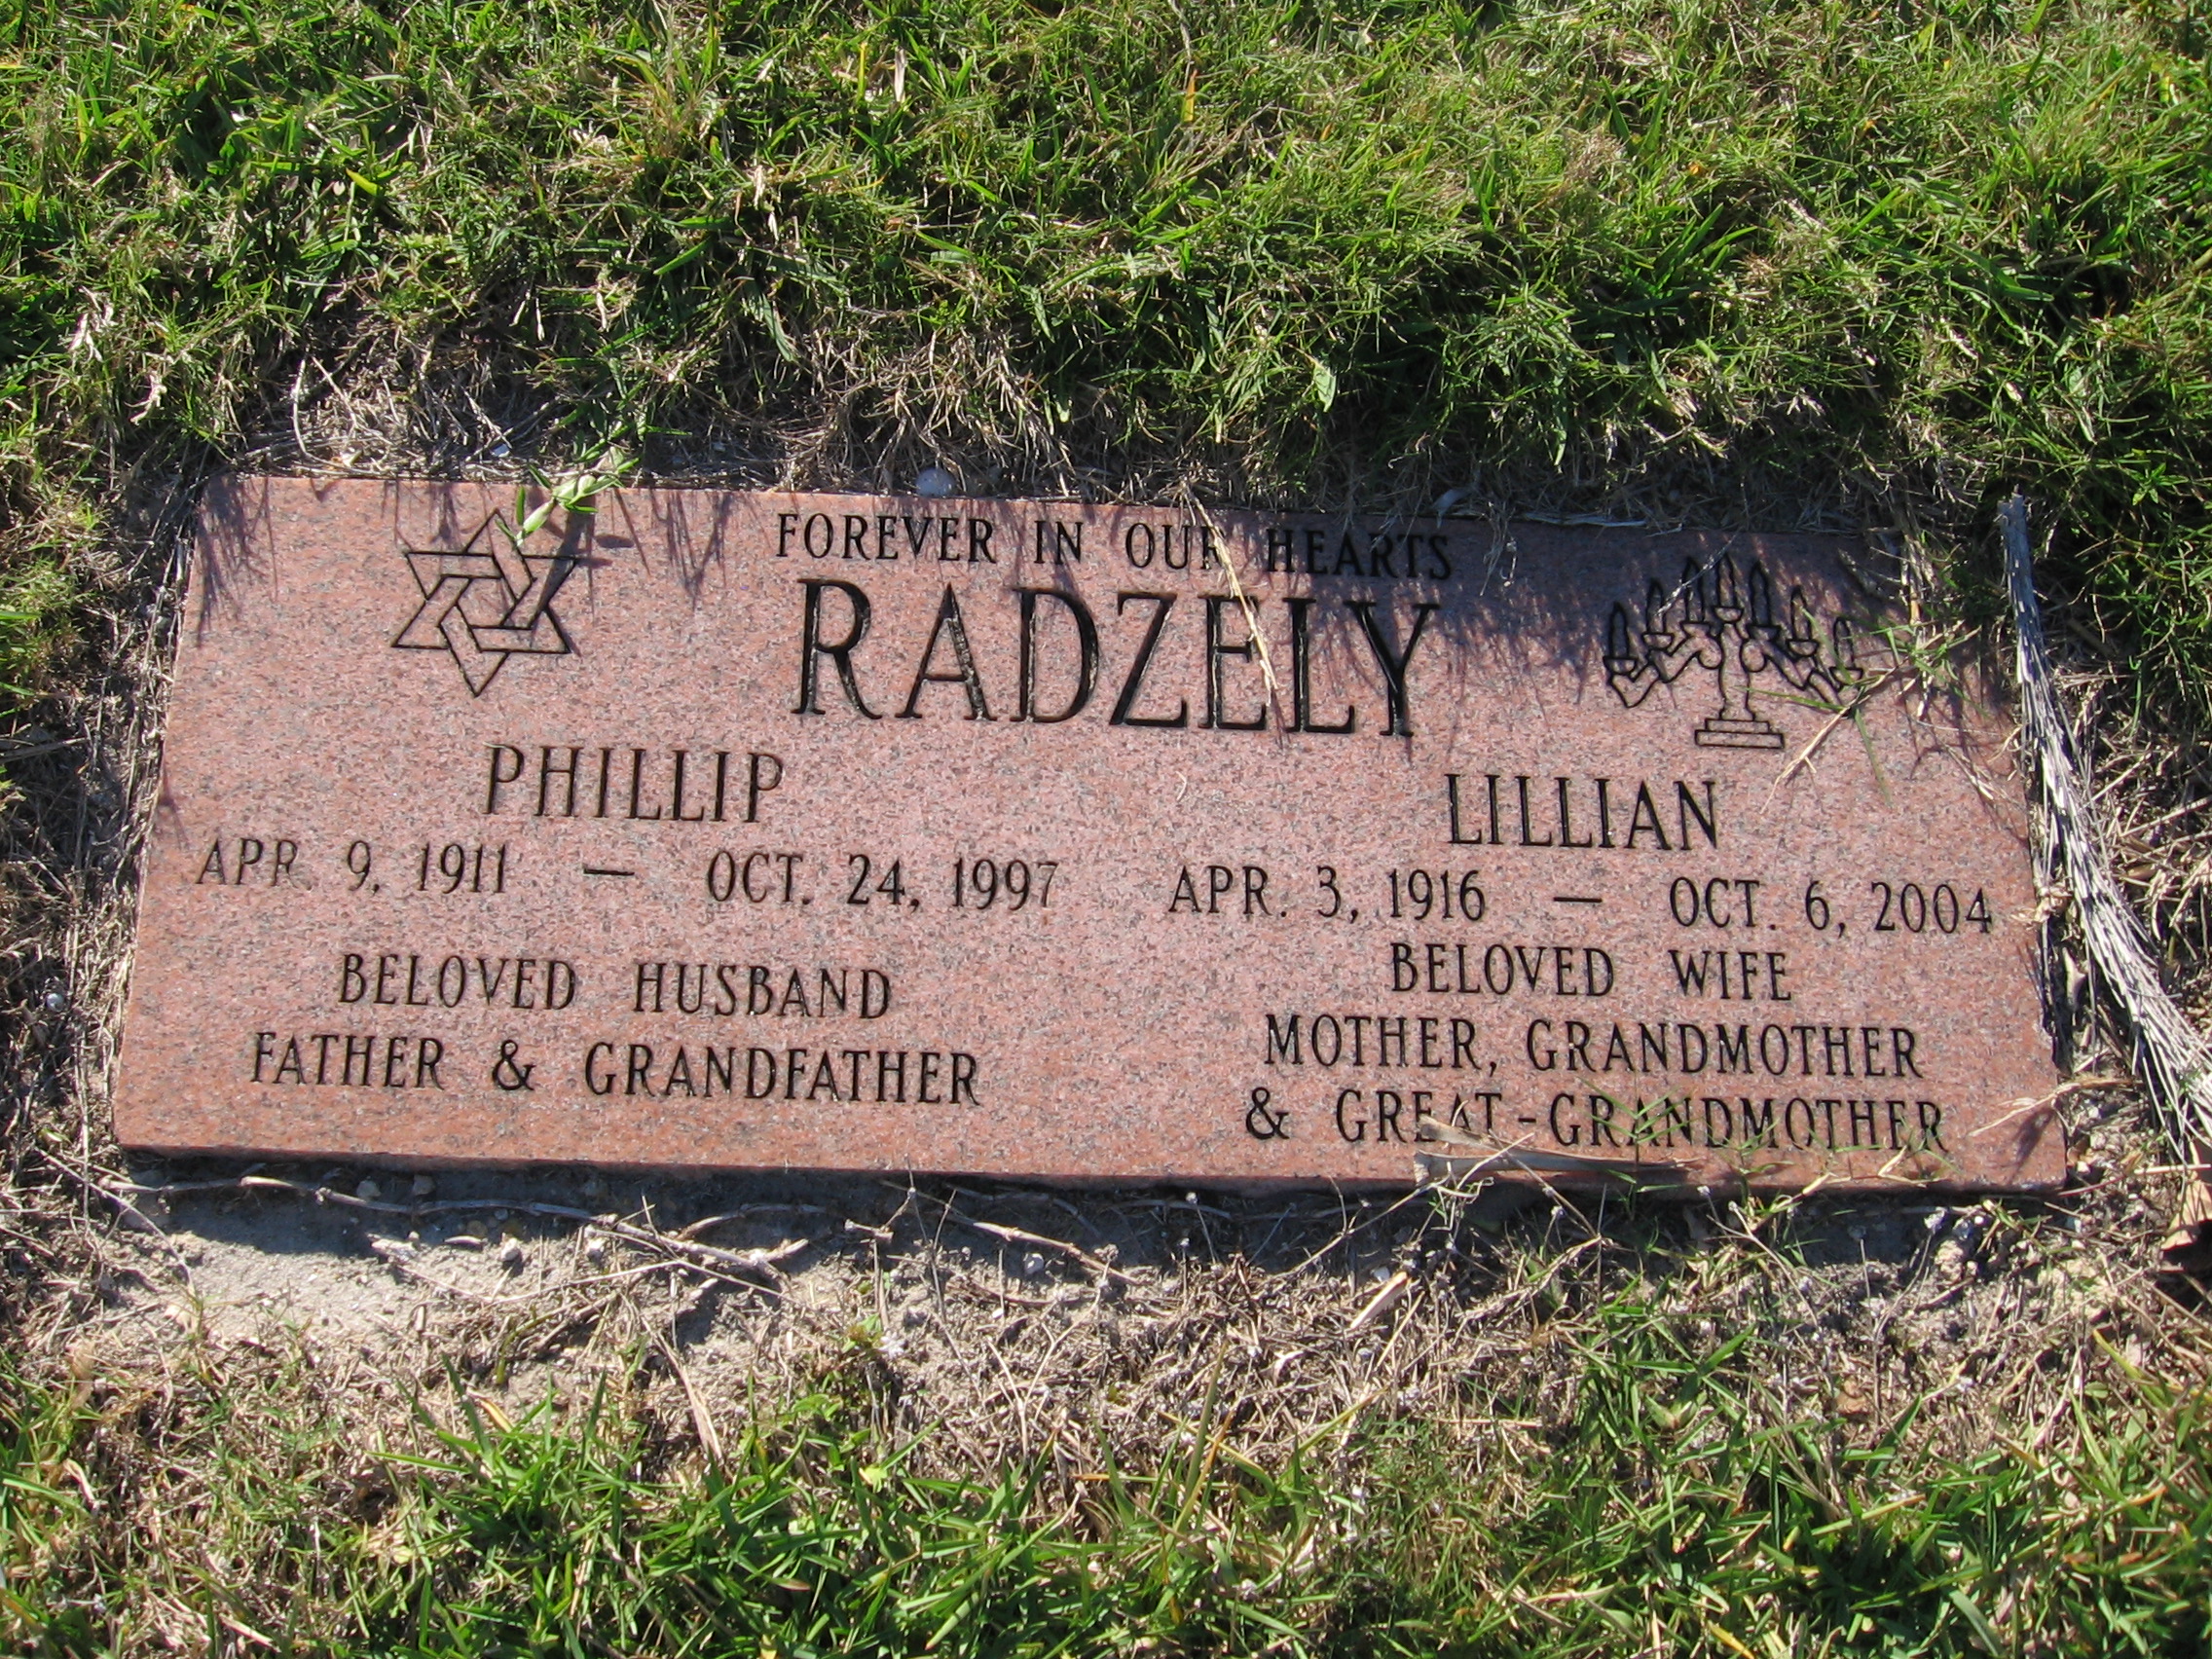 Phillip Radzely